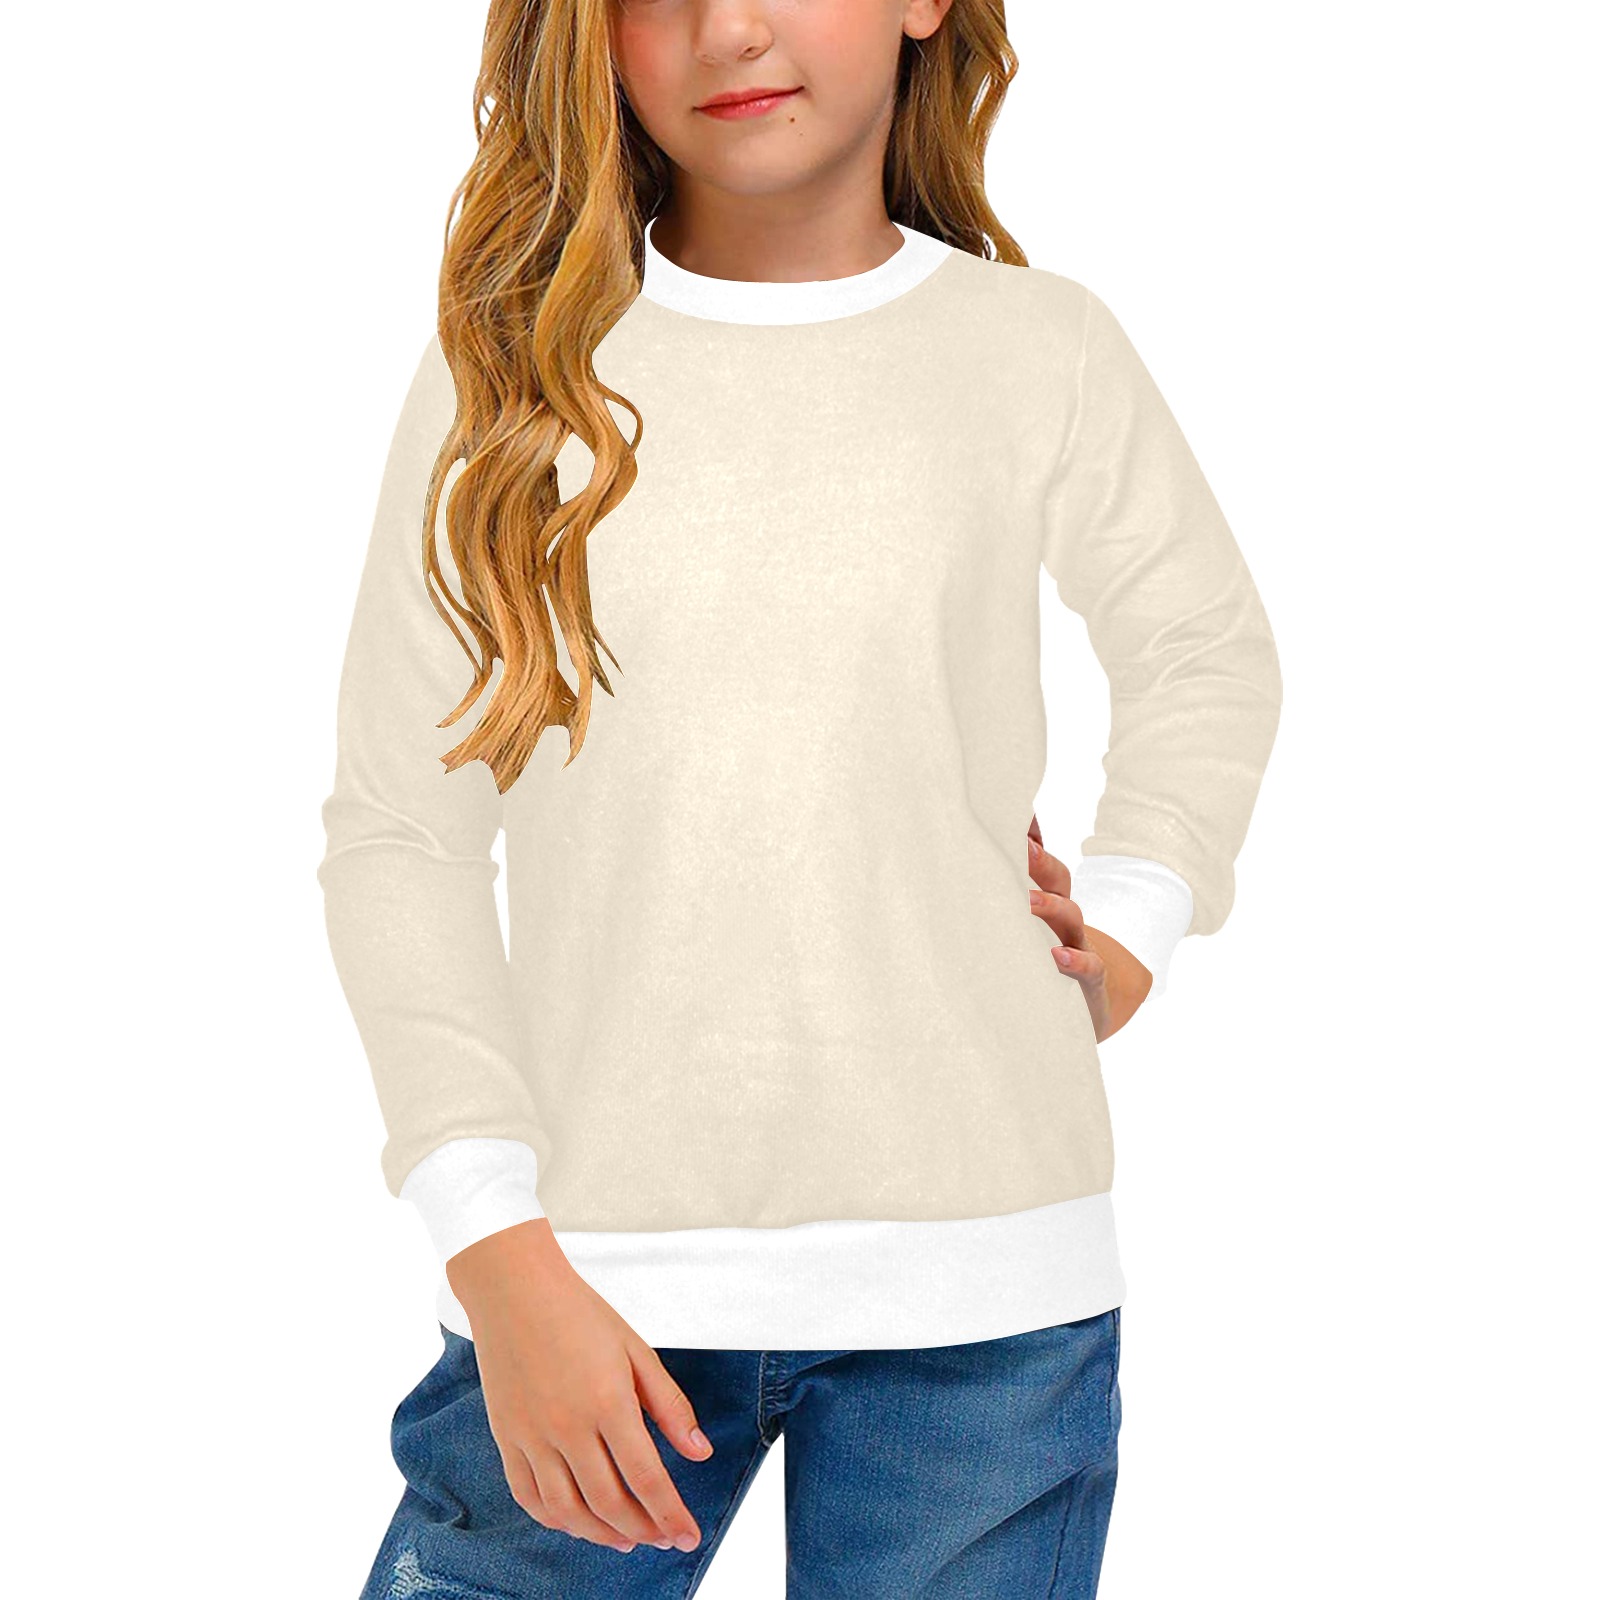 Buttercream Girls' All Over Print Crew Neck Sweater (Model H49)